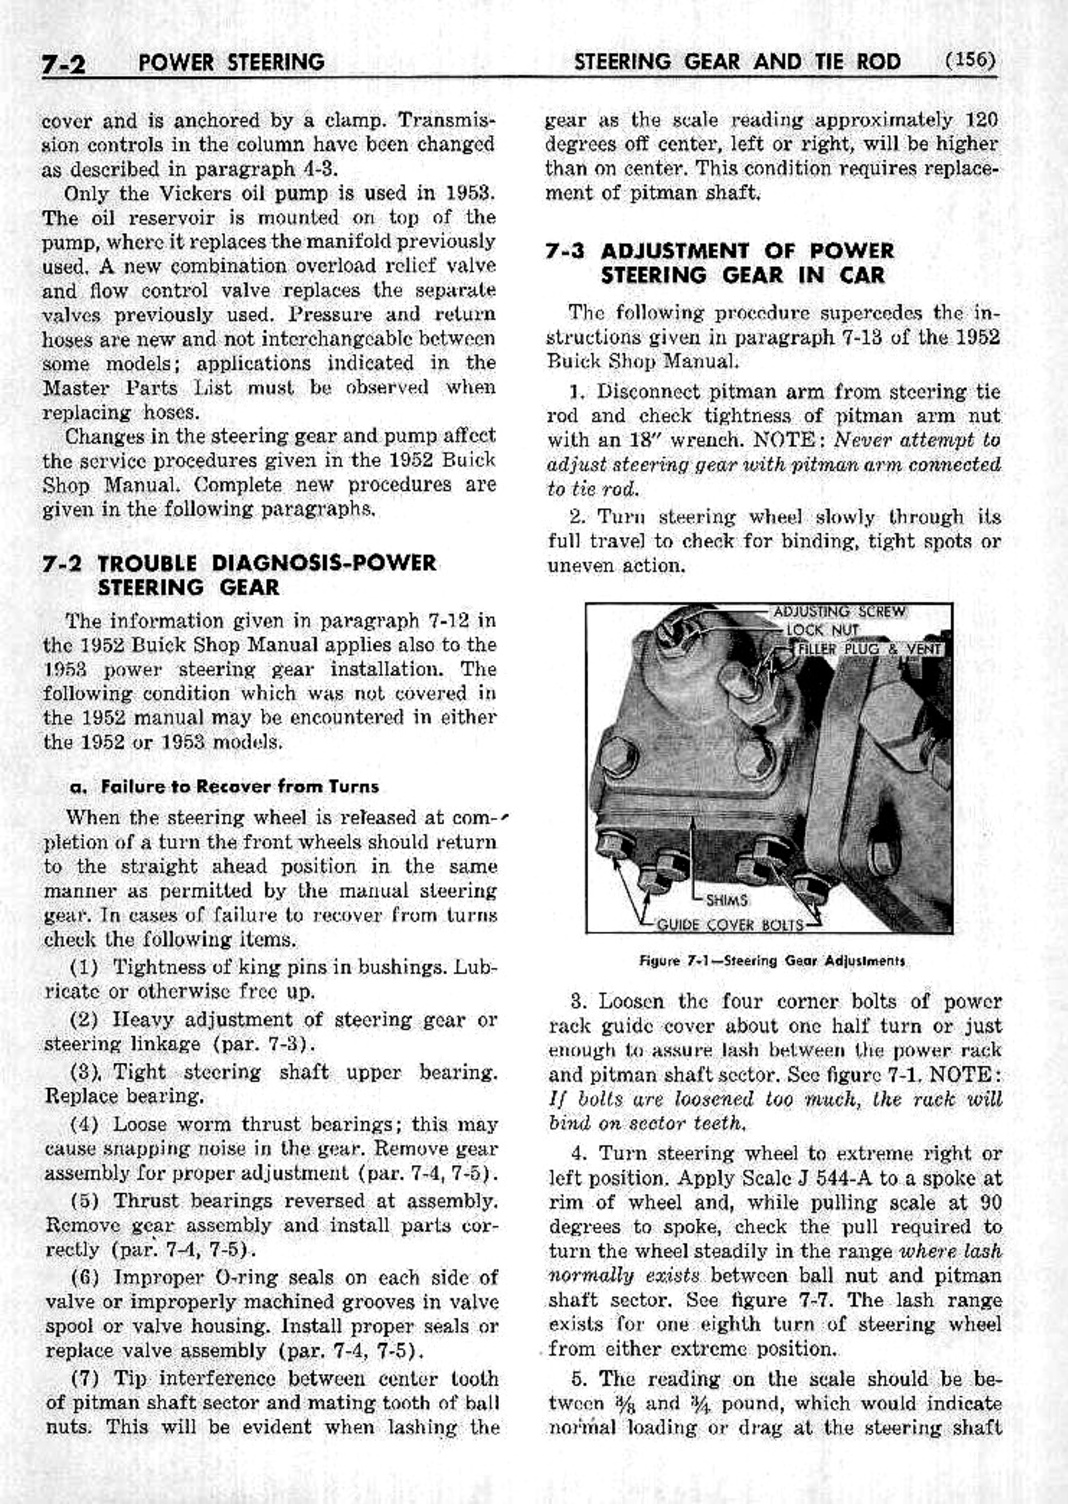 n_08 1953 Buick Shop Manual - Steering-002-002.jpg